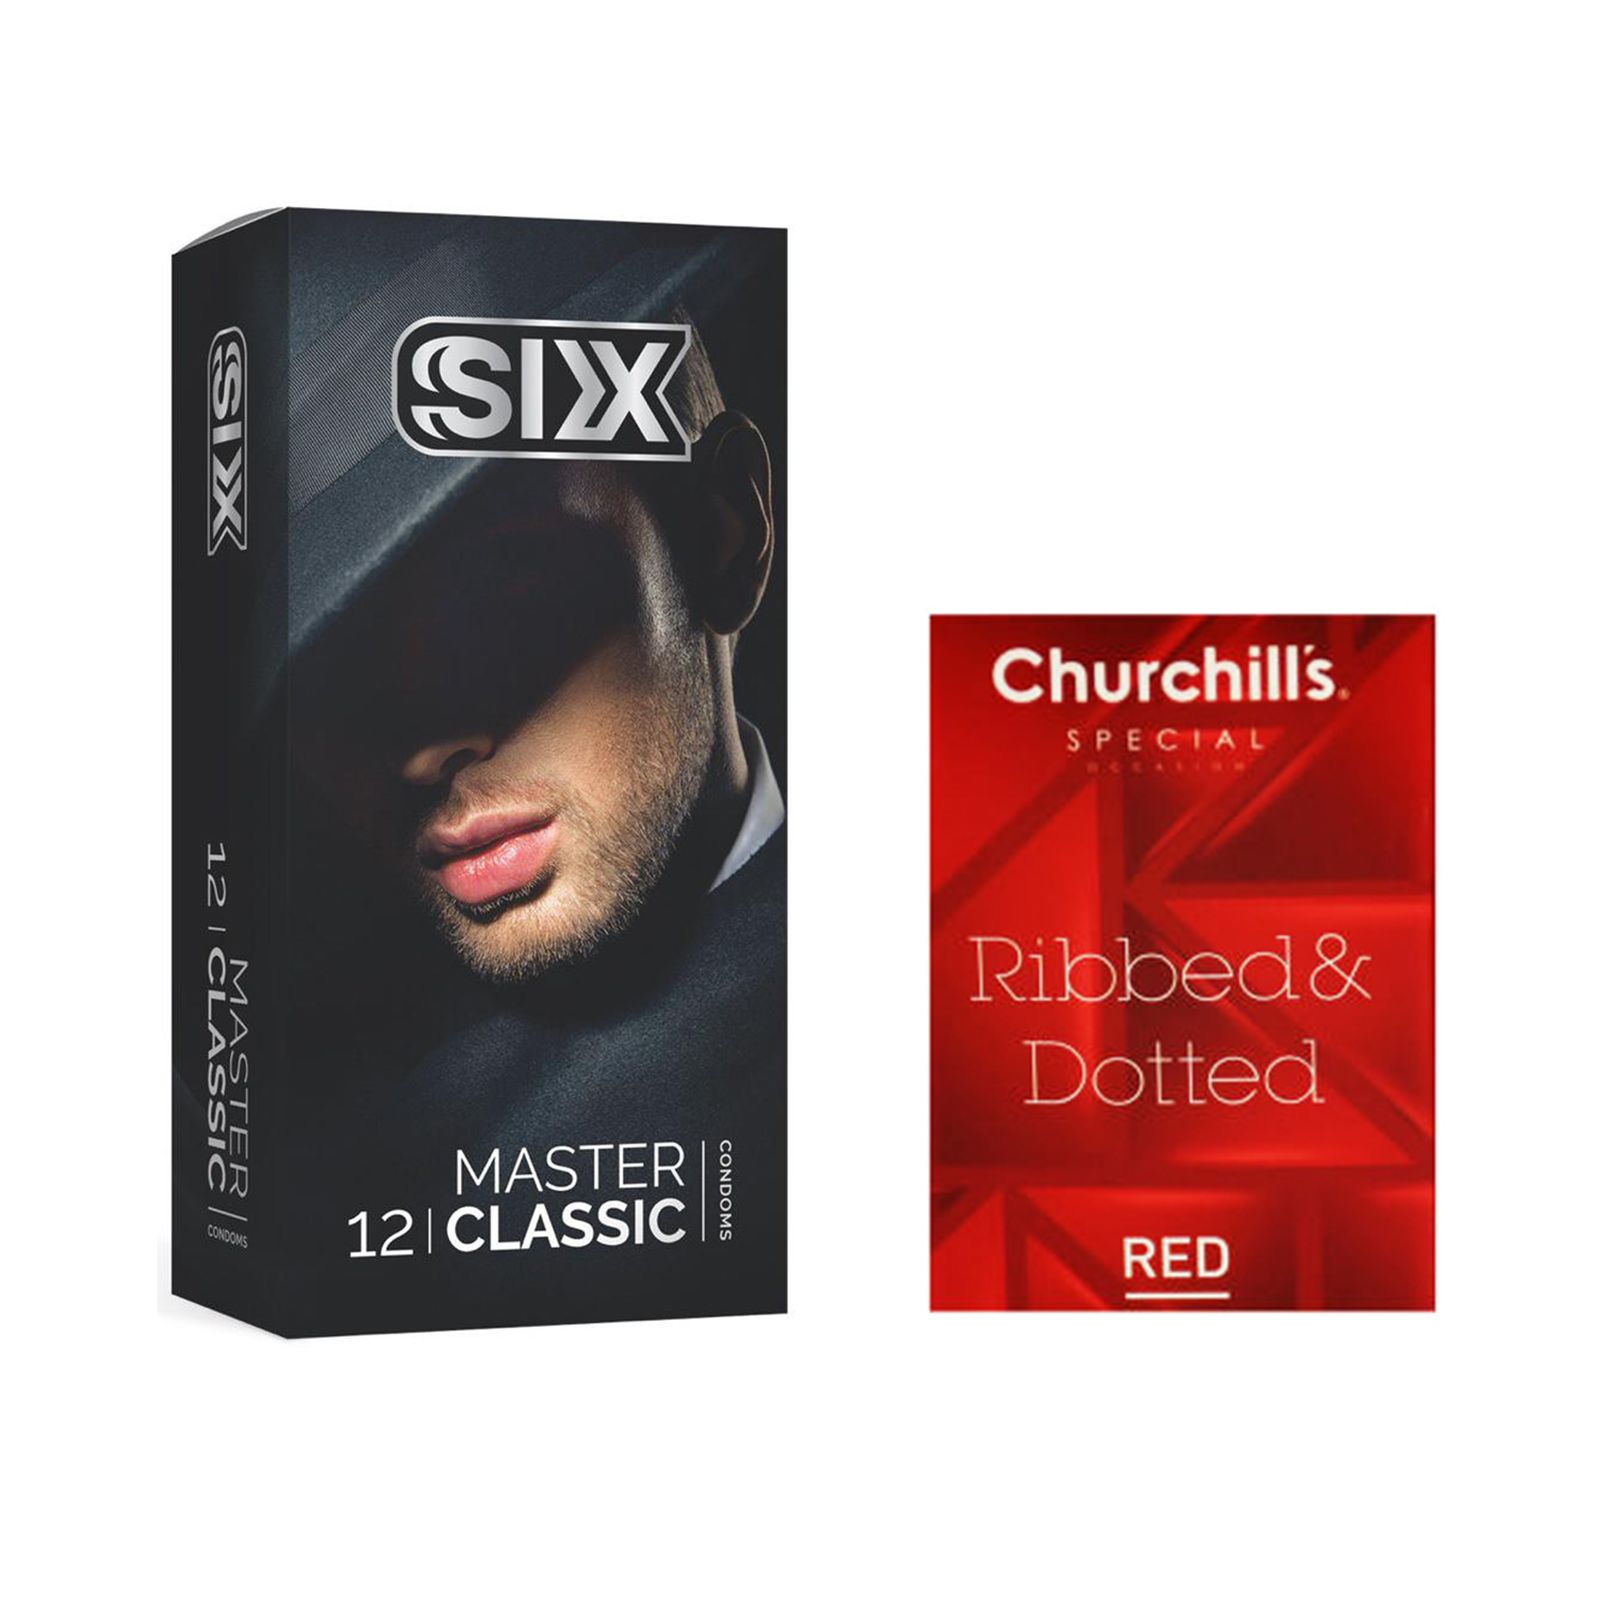 کاندوم سیکس مدل Master Classic بسته 12 عددی به همراه کاندوم چرچیلز مدل Hot Gel بسته 3 عددی -  - 2